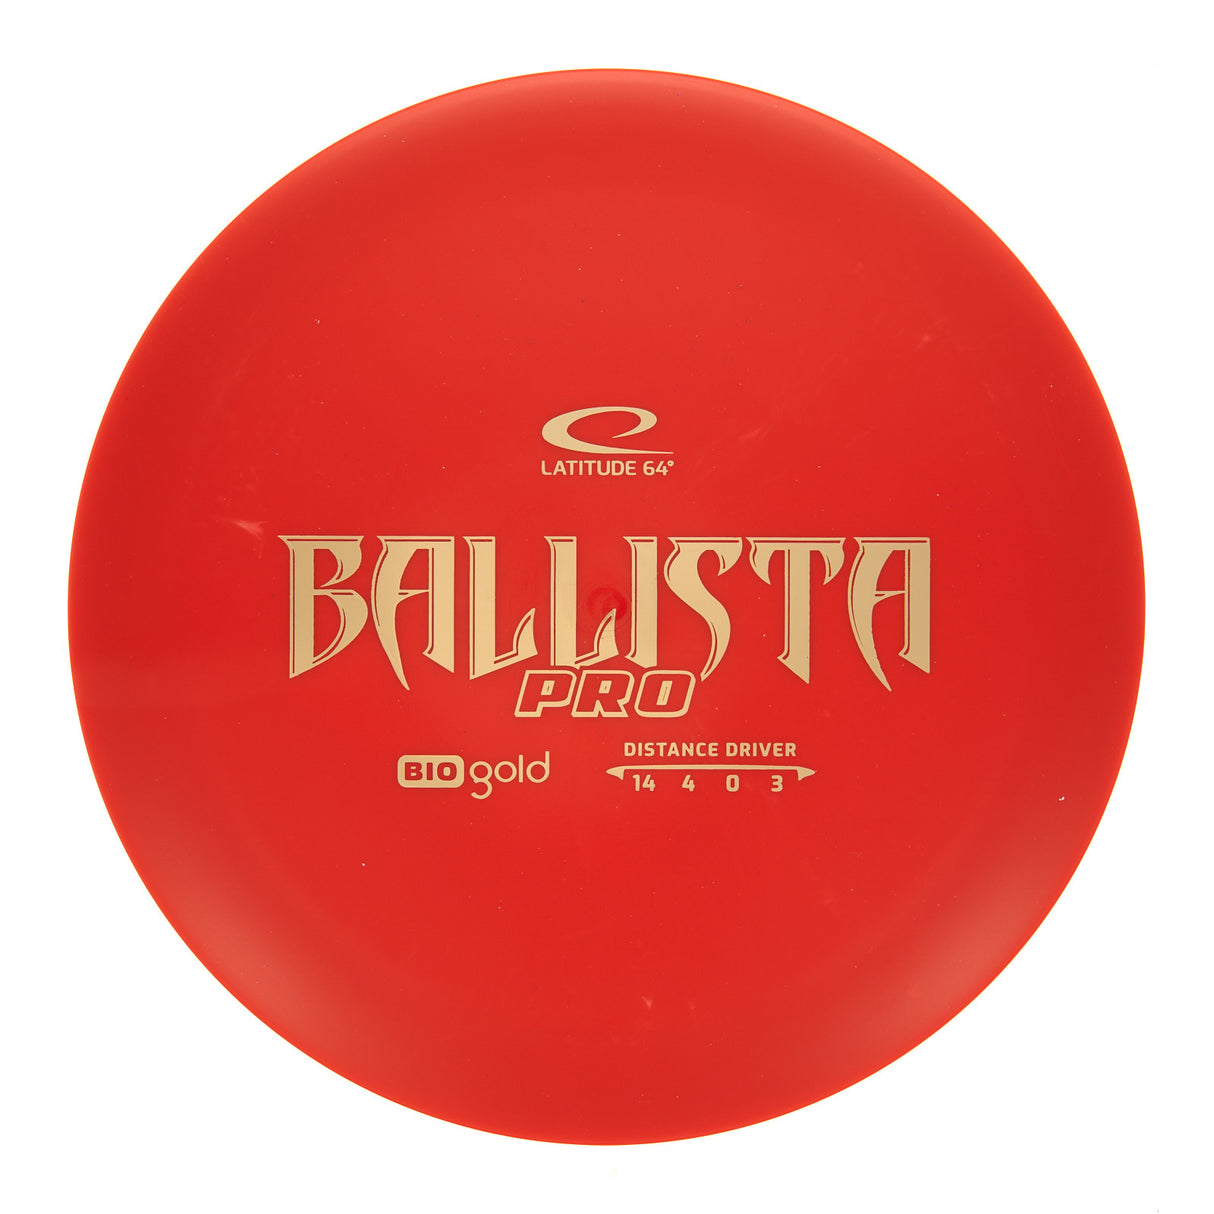 Latitude 64 Ballista Pro - Bio Gold 172g | Style 0003